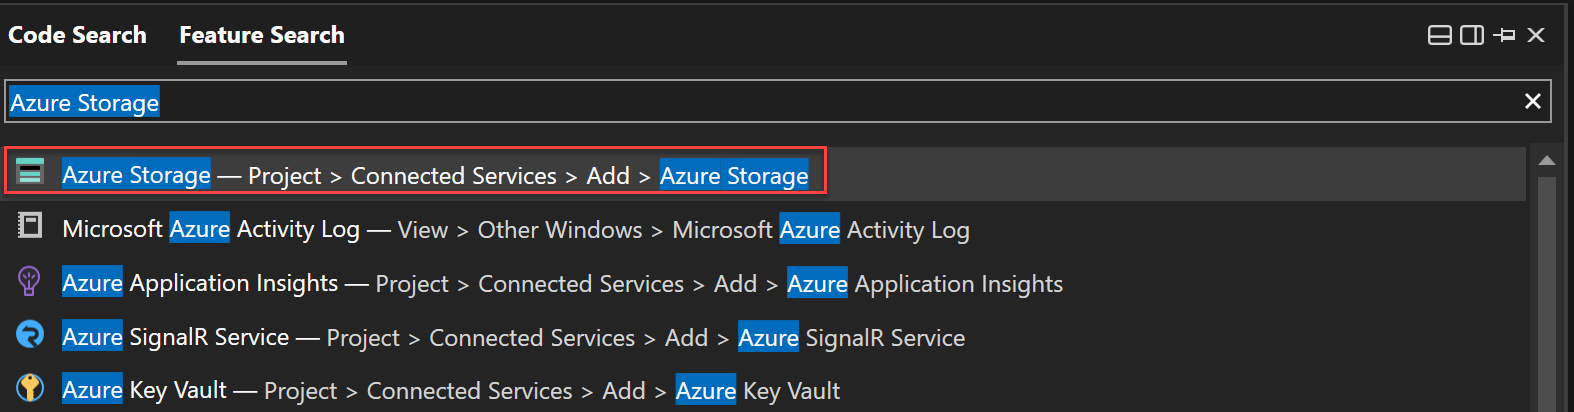 기능 검색을 사용하여 Azure Storage를 검색하는 스크린샷.